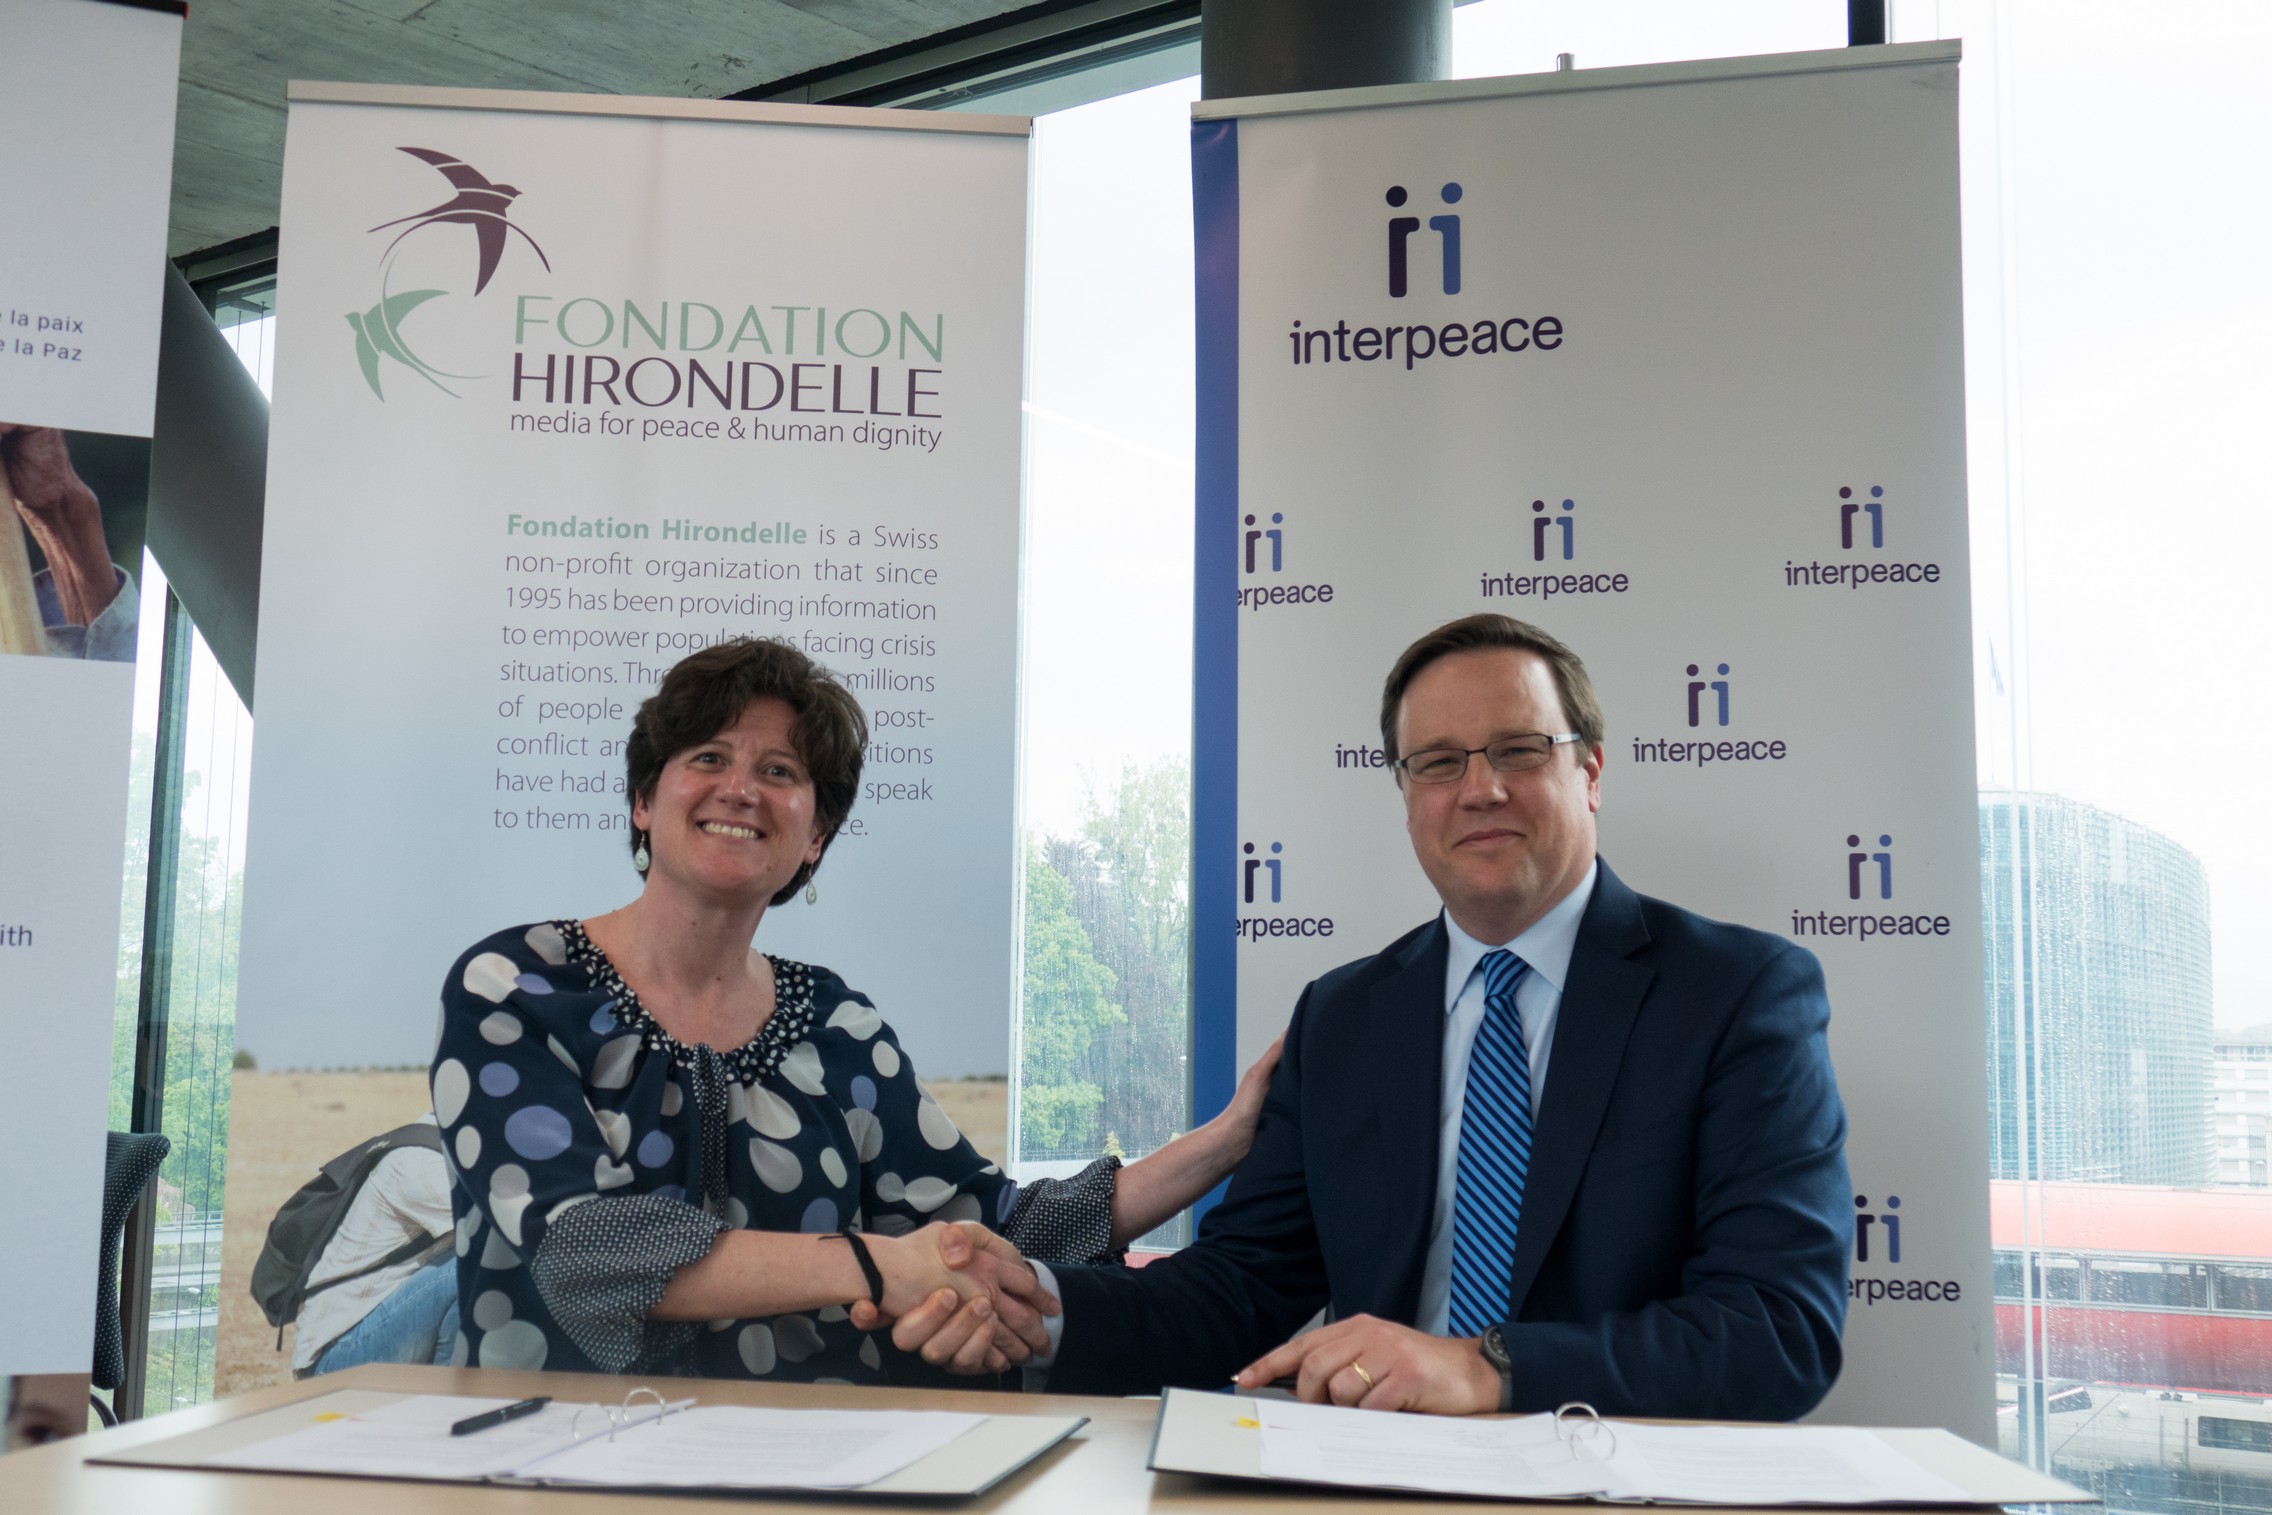 Signature du partenariat entre la Fondation Hirondelle et Interpeace à la Maison de la Paix à Genève le 4 mai 2017 © Fondation Hirondelle / Fabian Jobin